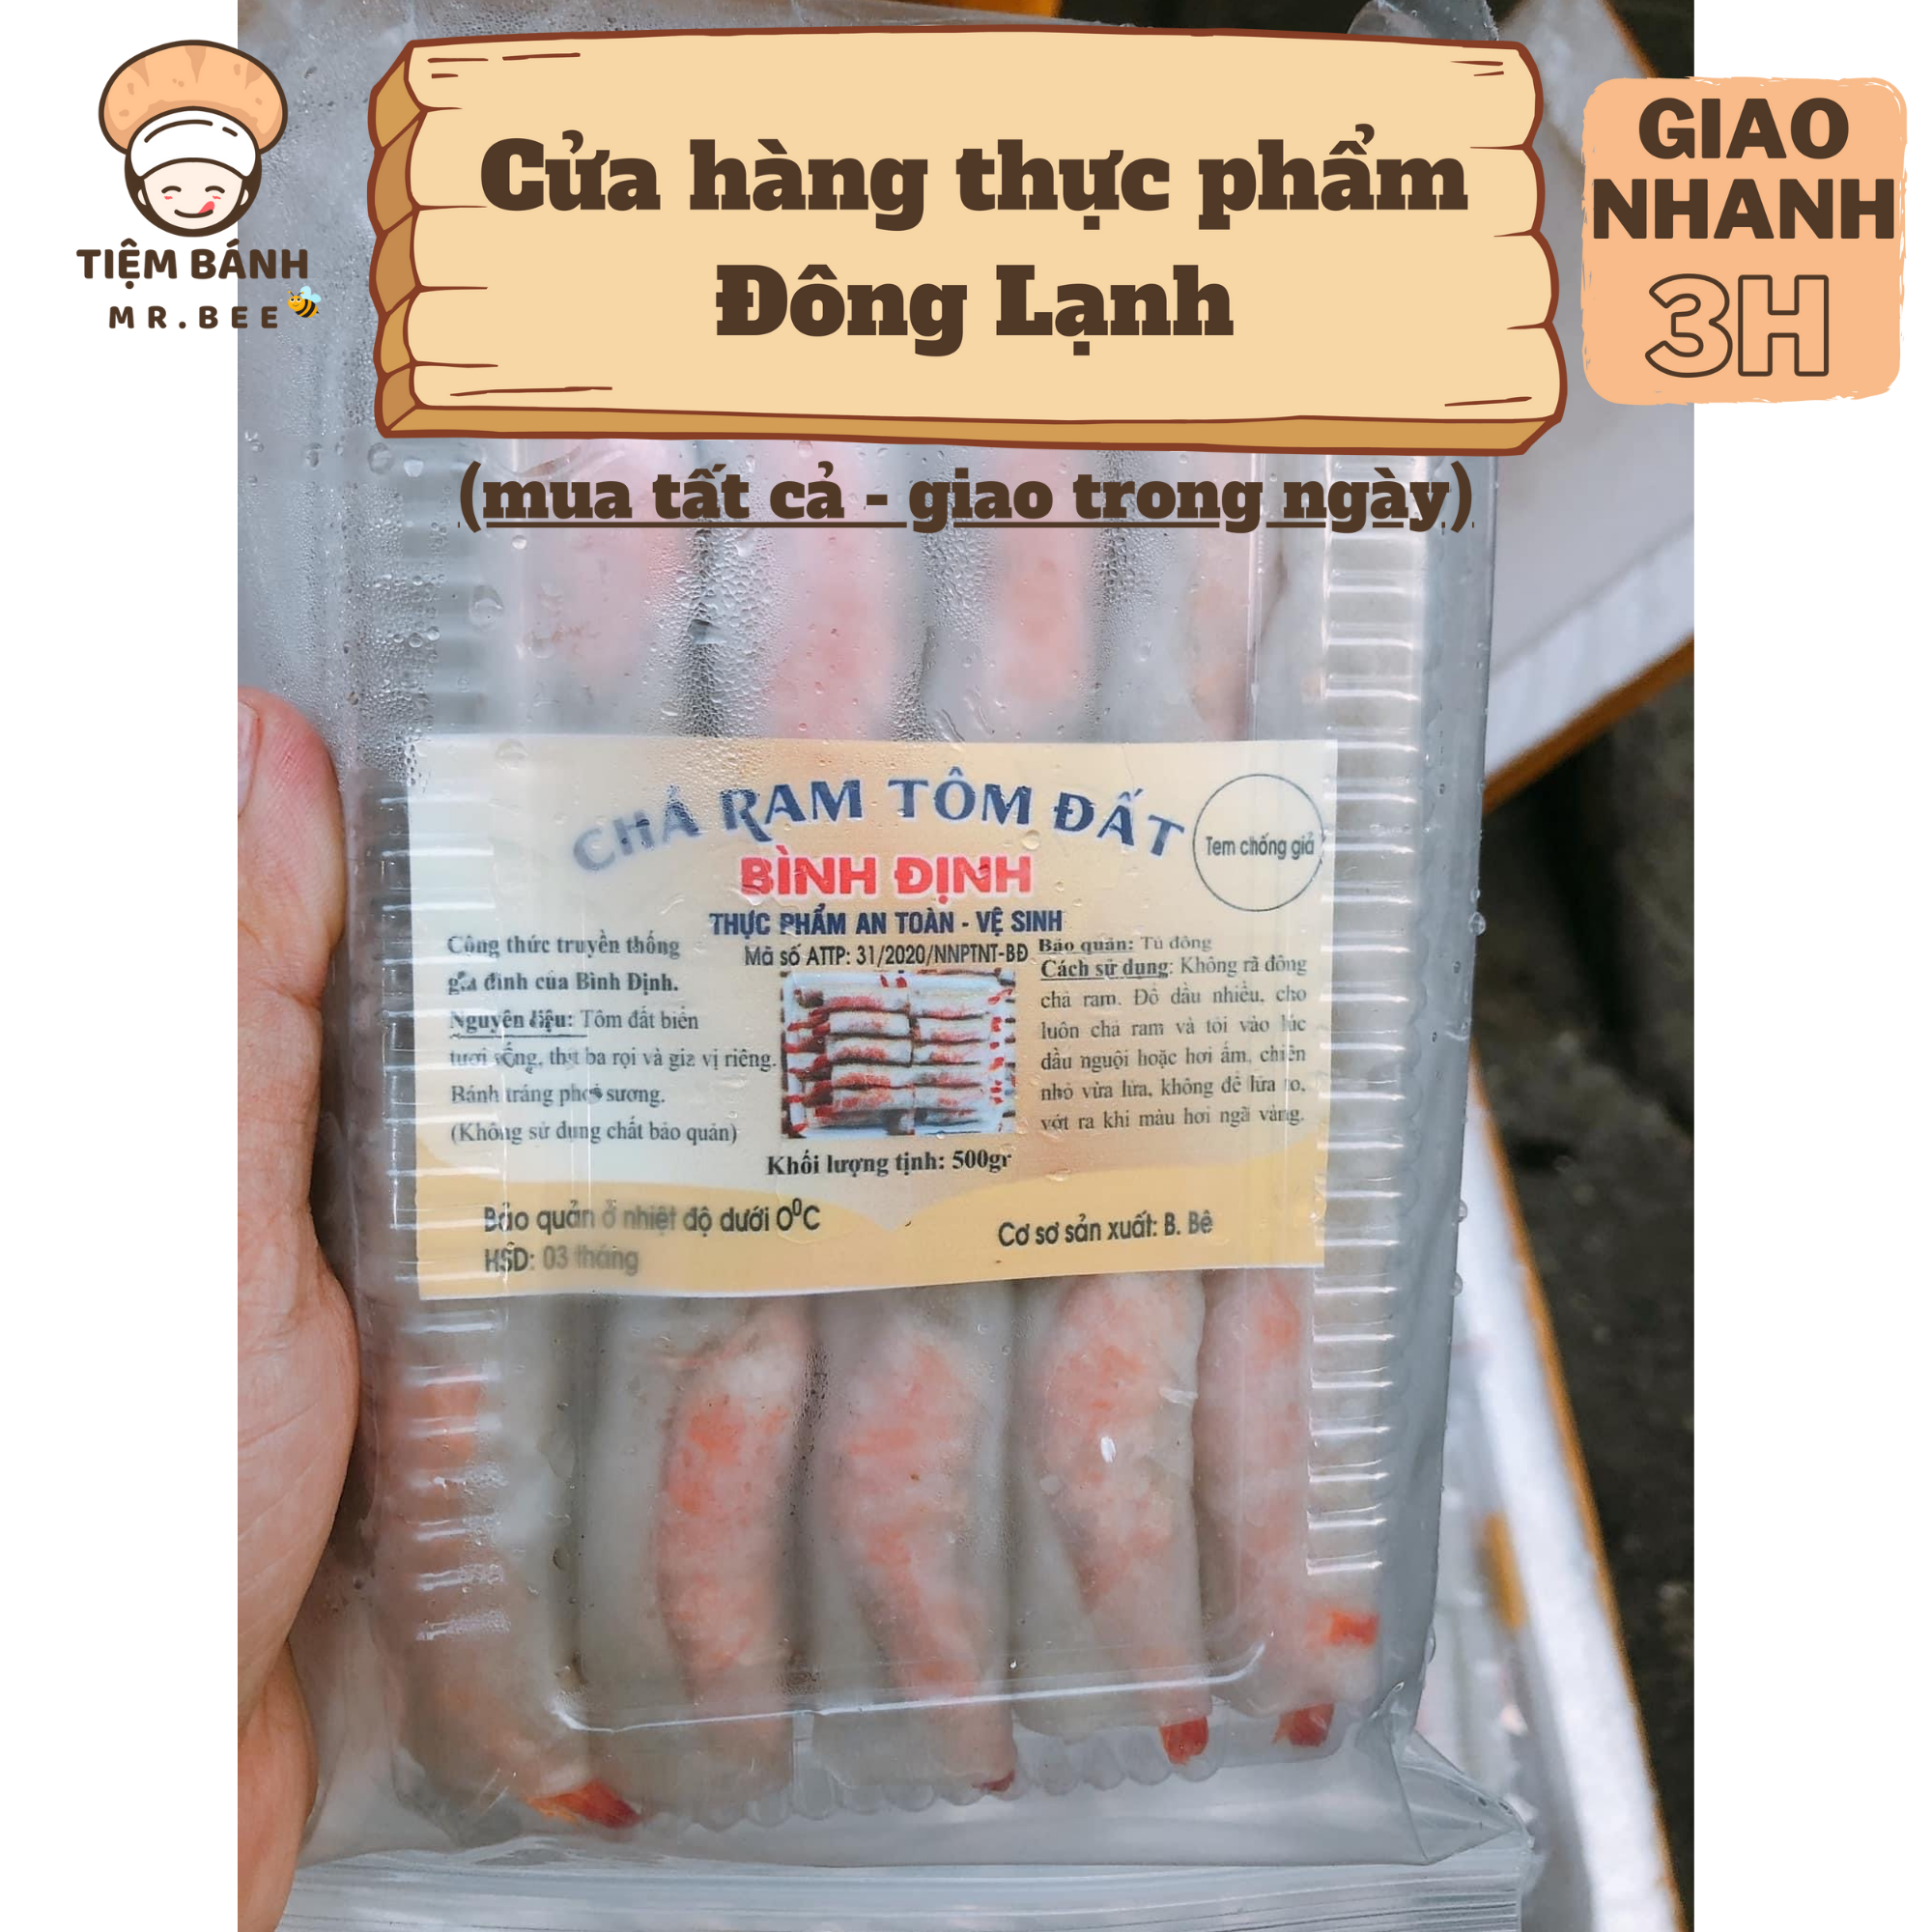 – Chả Ram Tôm Đất Bình Định - 1 khay 500gr